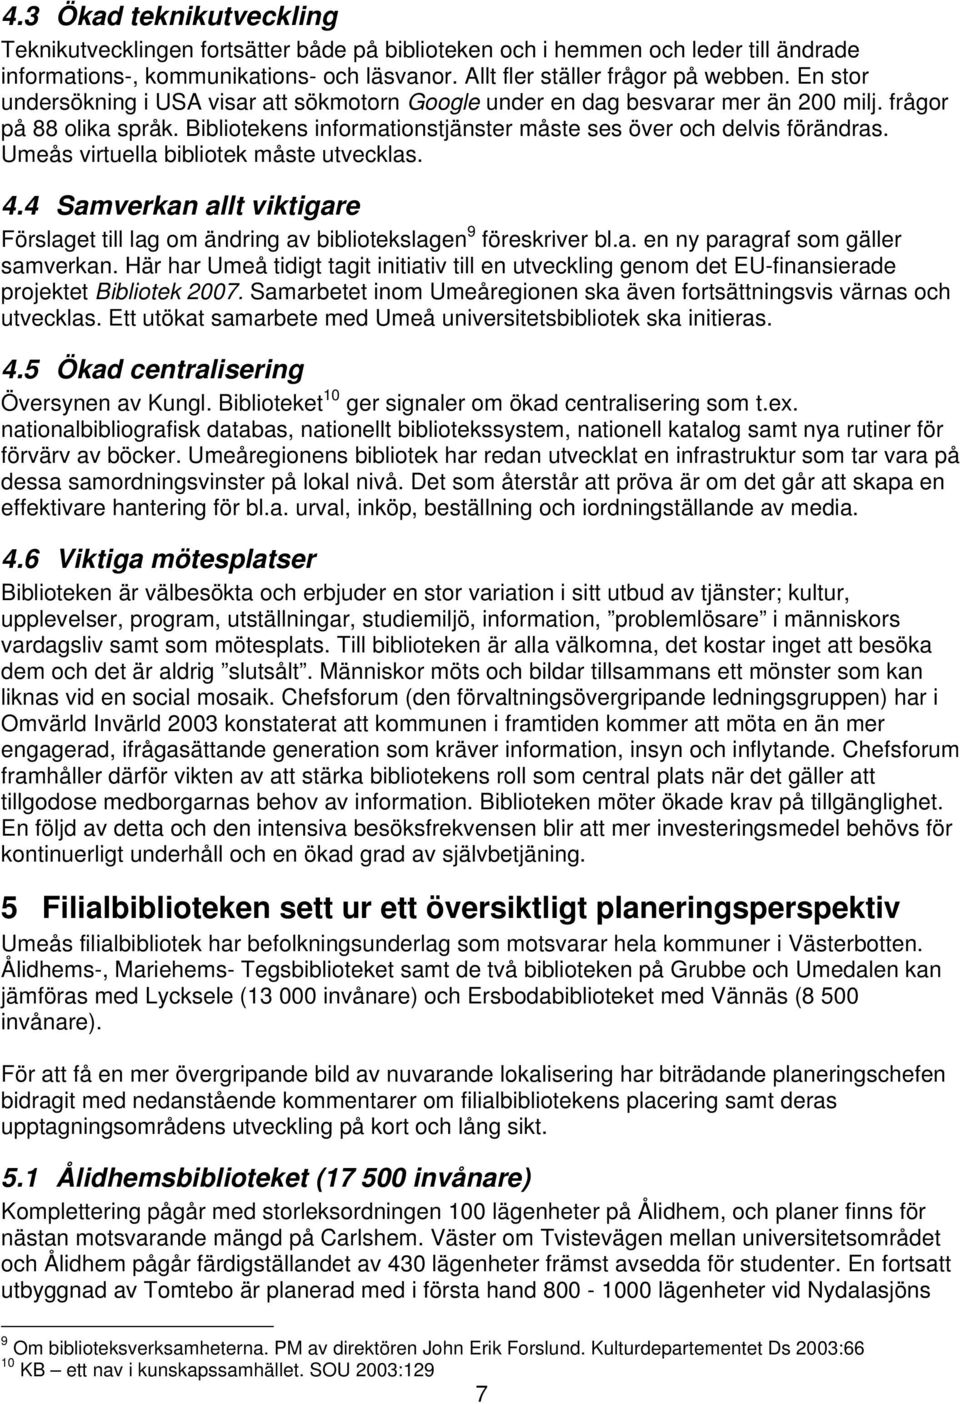 Umeås virtuella bibliotek måste utvecklas. 4.4 Samverkan allt viktigare Förslaget till lag om ändring av bibliotekslagen 9 föreskriver bl.a. en ny paragraf som gäller samverkan.